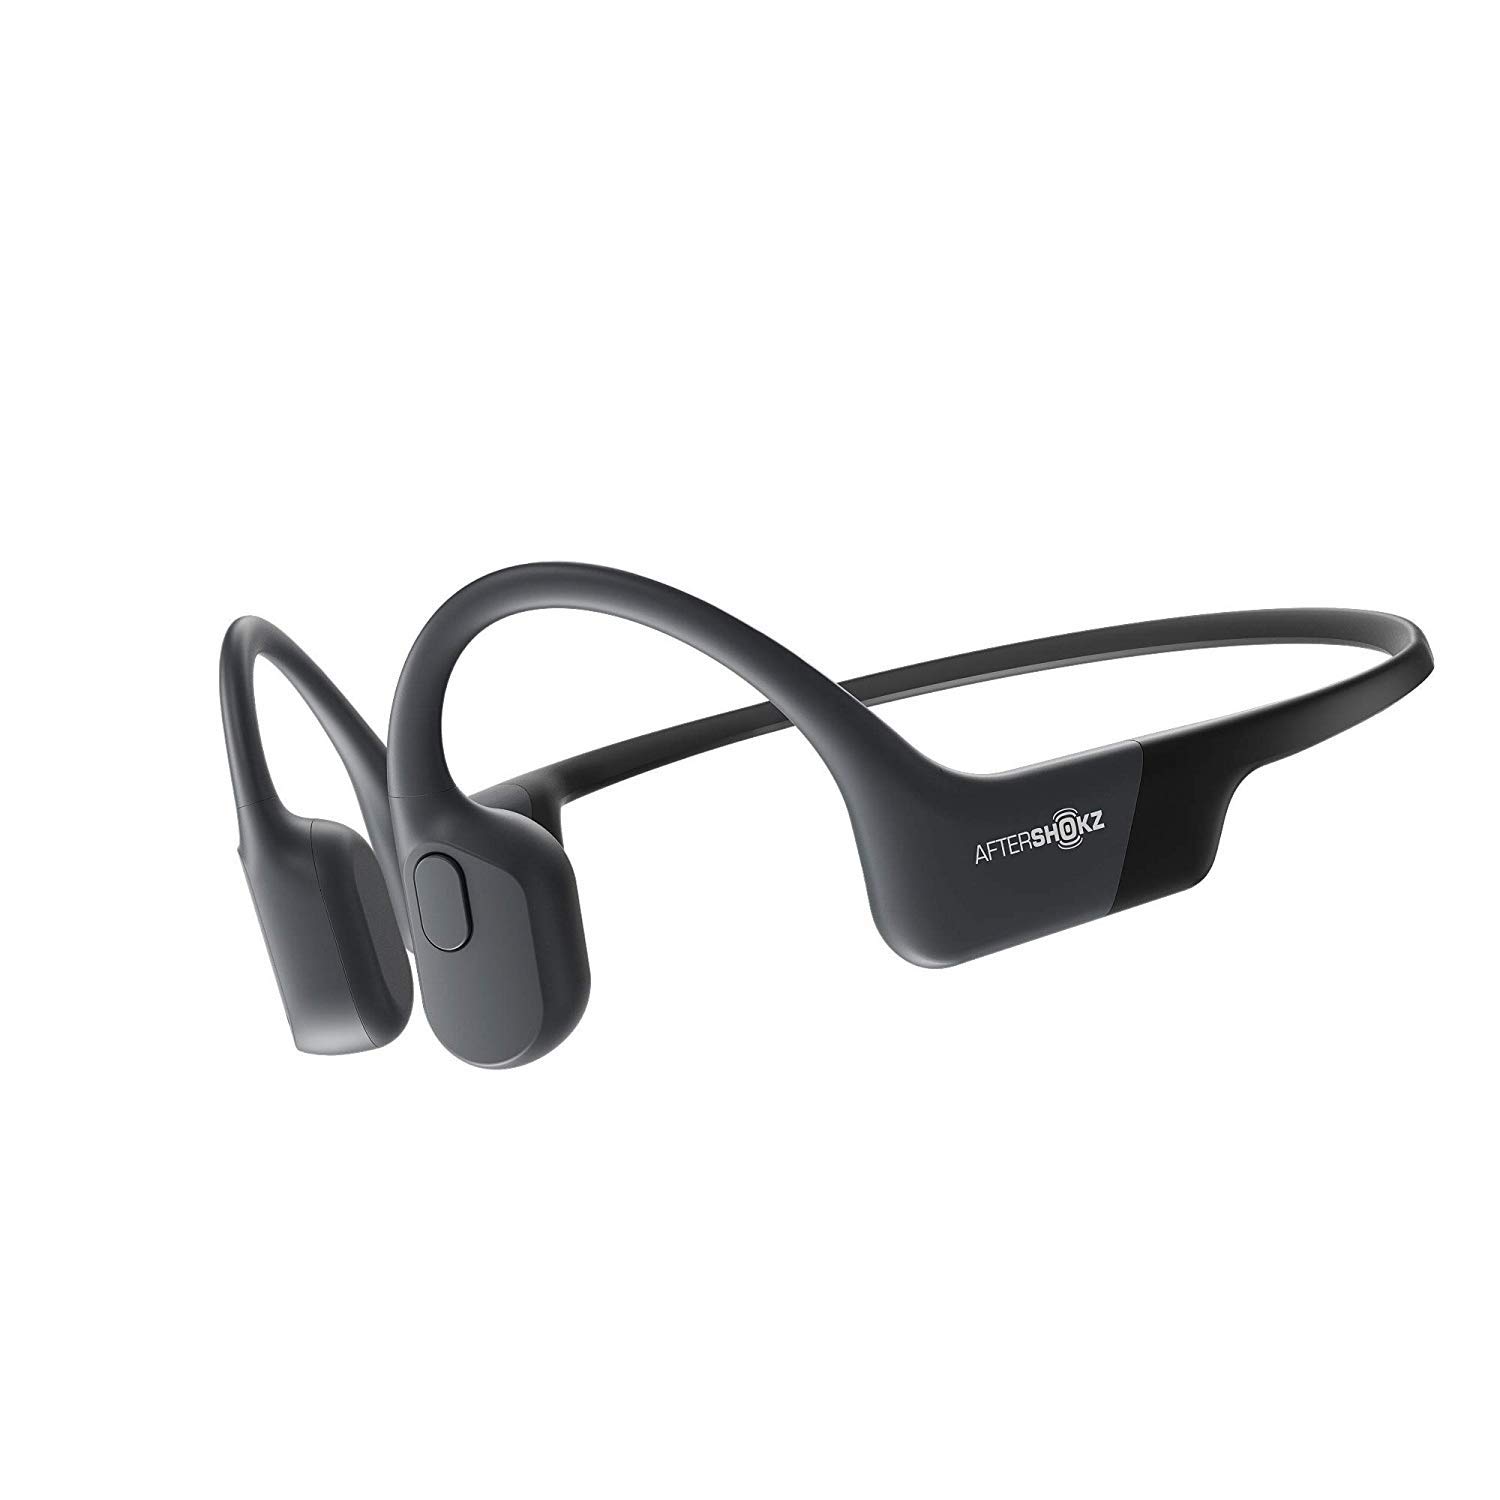  Aftershokz Aeropex - Écouteurs de sport à conduction osseuse Bluetooth à oreille ouverte - Écouteurs sans fil résistants à la transpiration pour les entraînements et la course à pied - Micro...